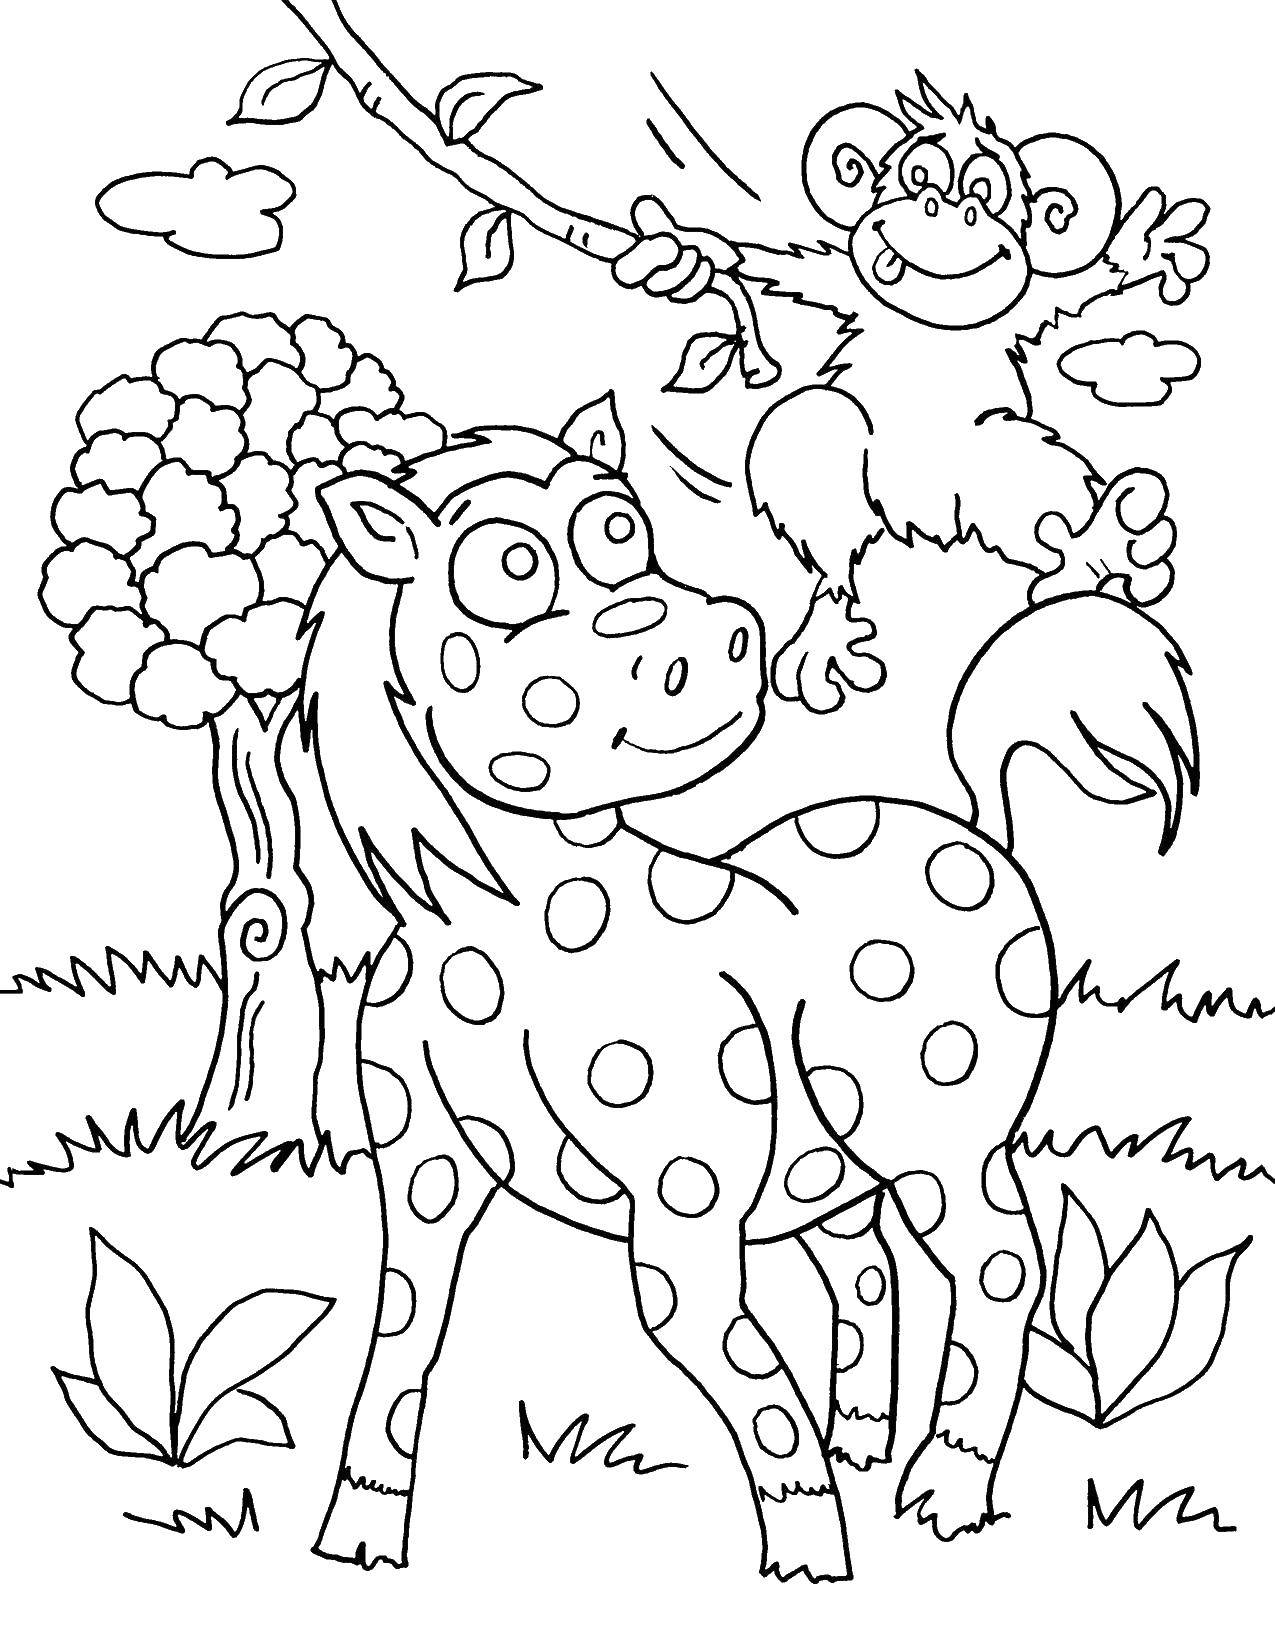 Coloring Horse polka dots and monkey. Category Wild animals. Tags:  Liana, monkey, horse, tree.